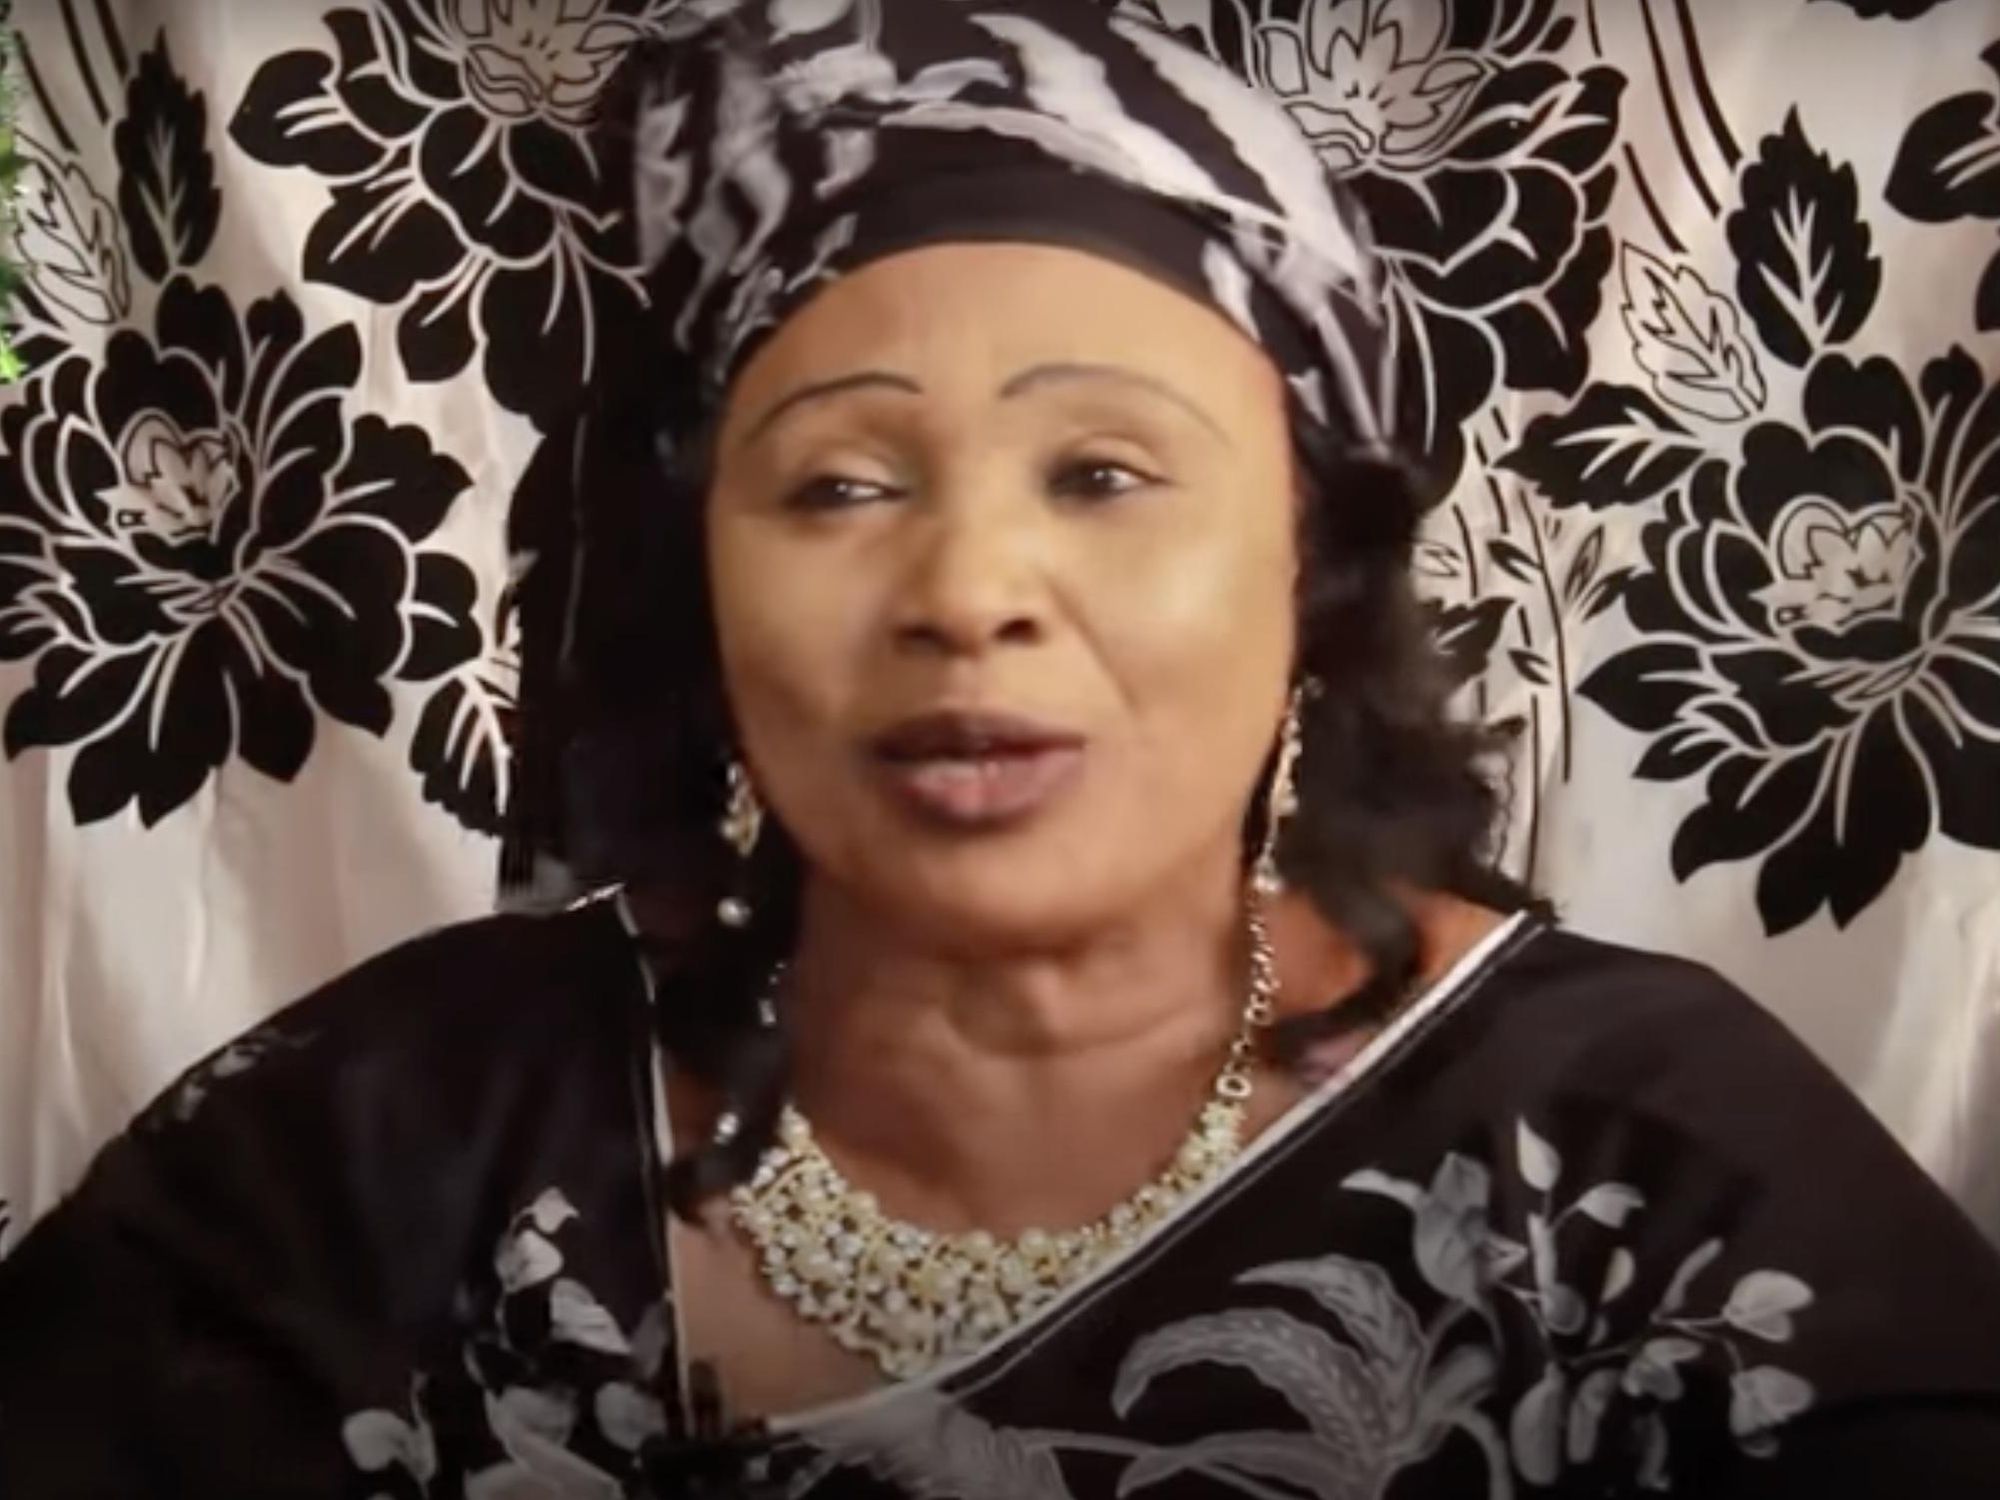 Niger Singer Hamsou Garba Dies At 64